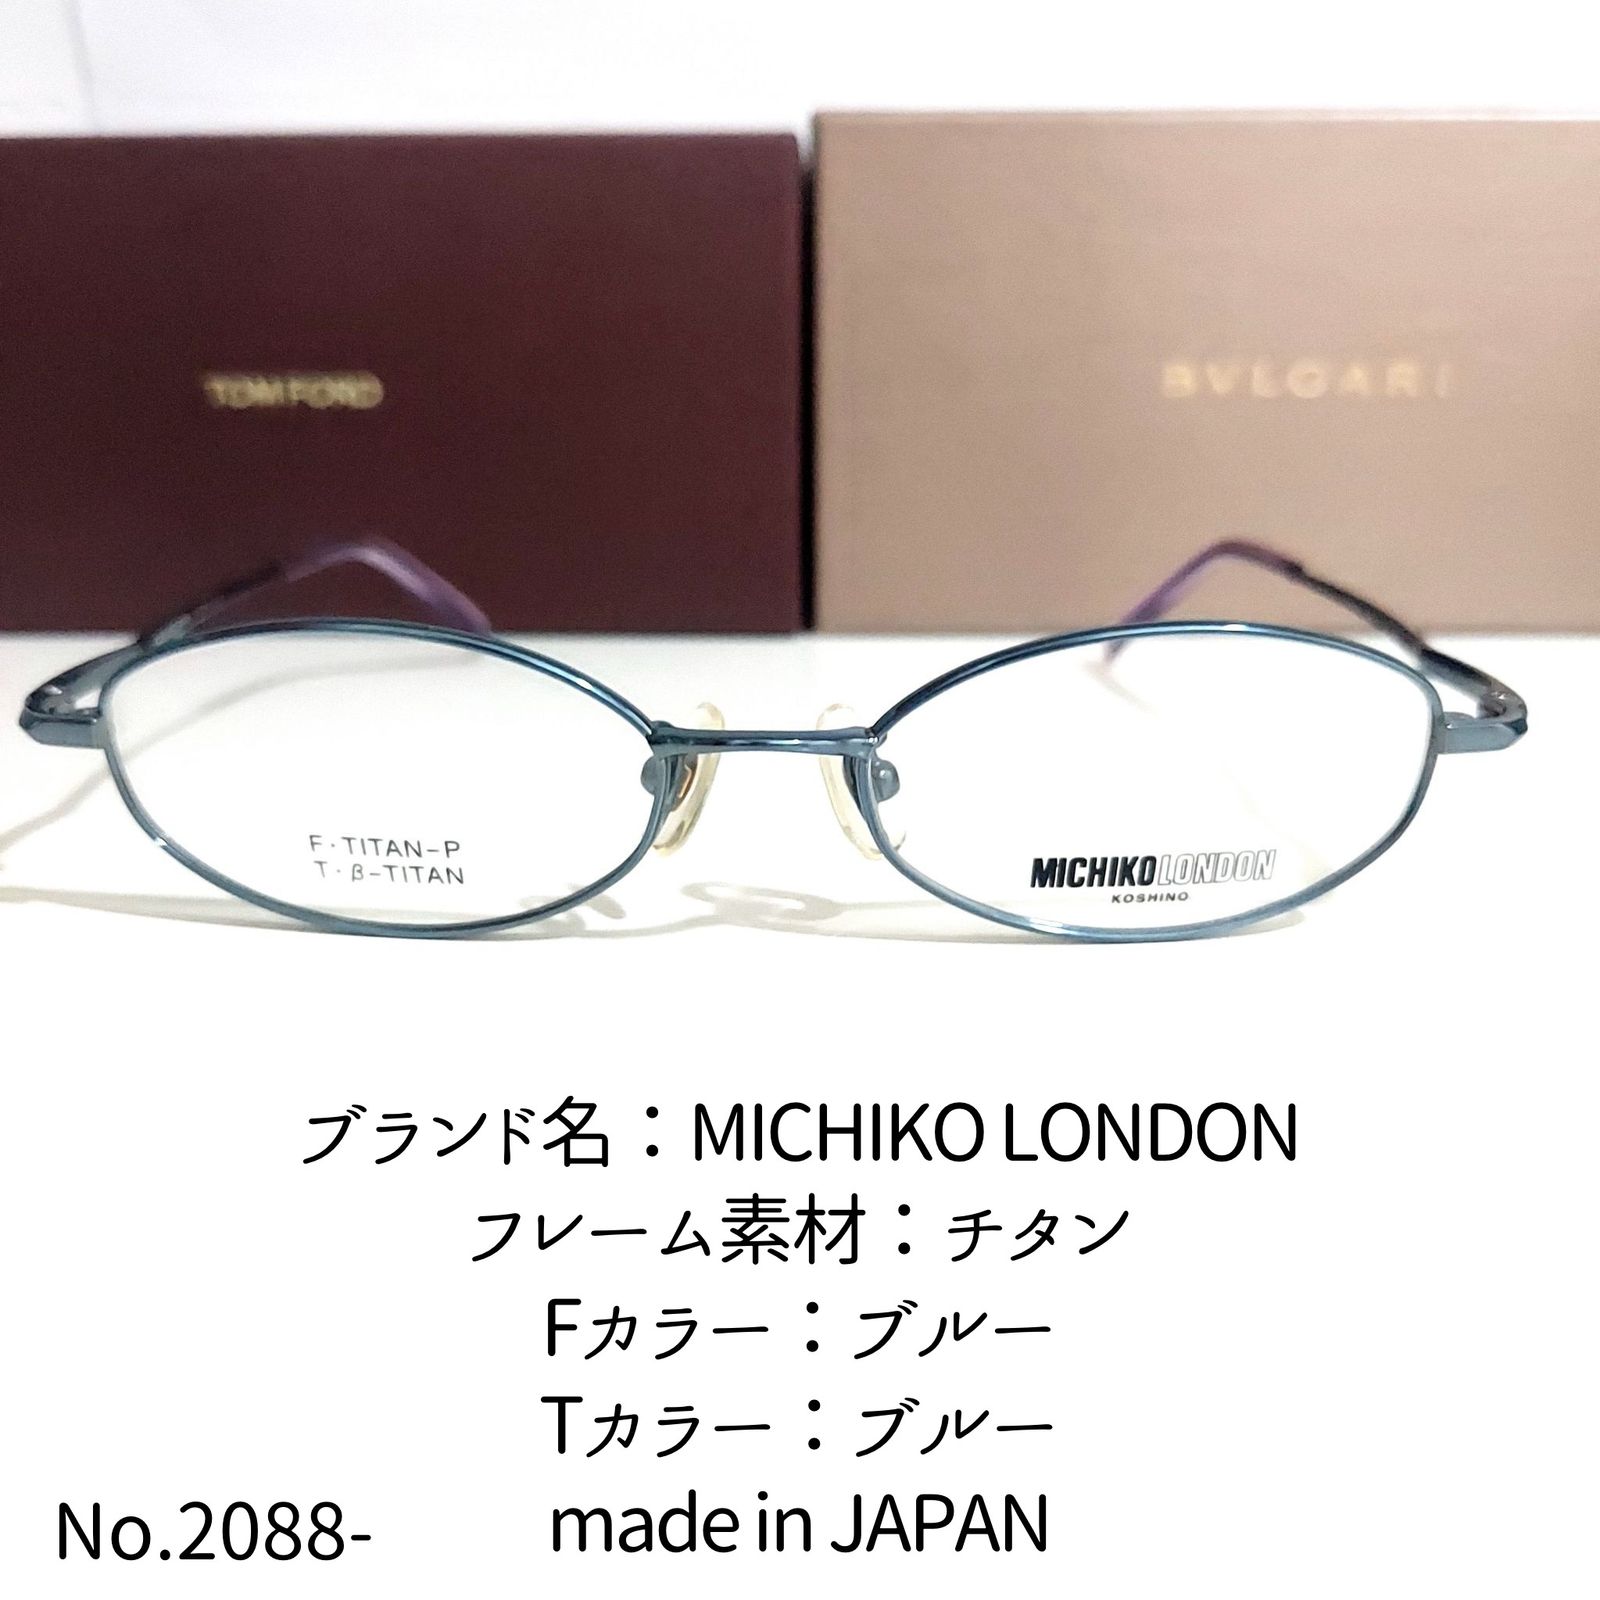 No.2088-メガネ MICHIKO LONDON【フレームのみ価格】 - メルカリ